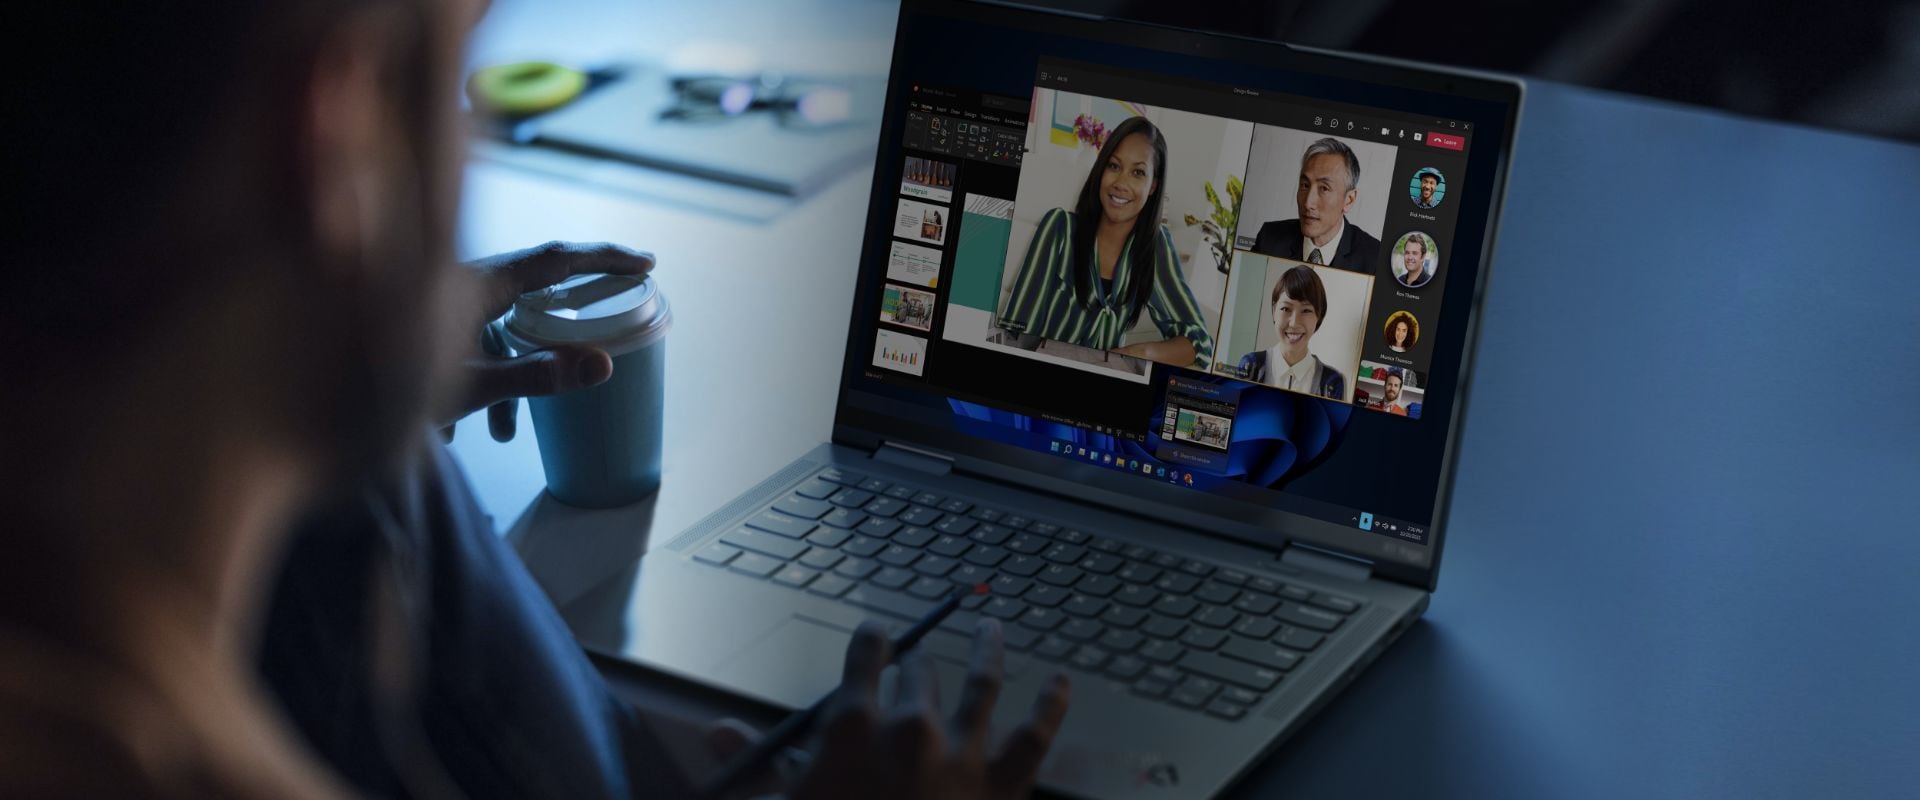 Lenovo ThinkPad: Business Laptops for | Lenovo US